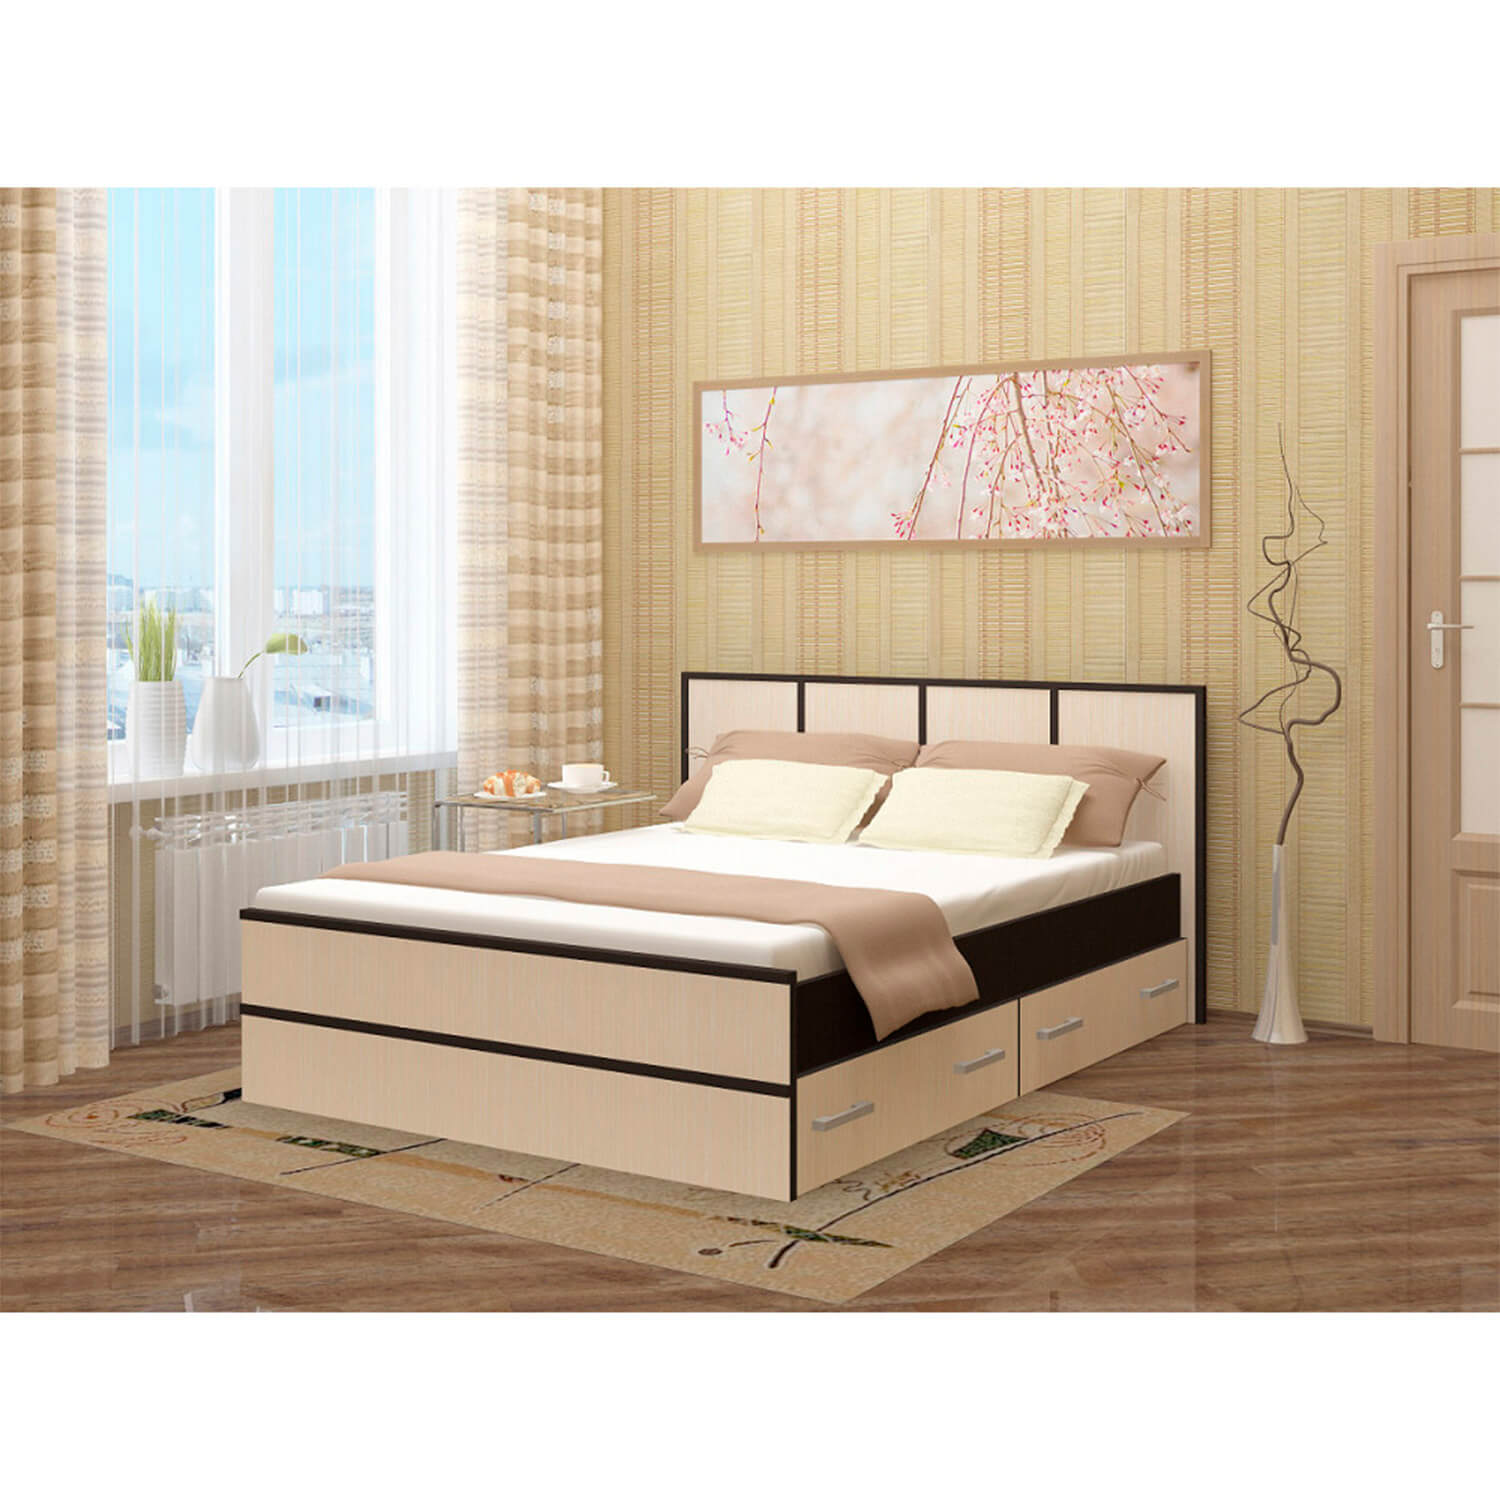 Кровать сакура с матрасом и ящиками